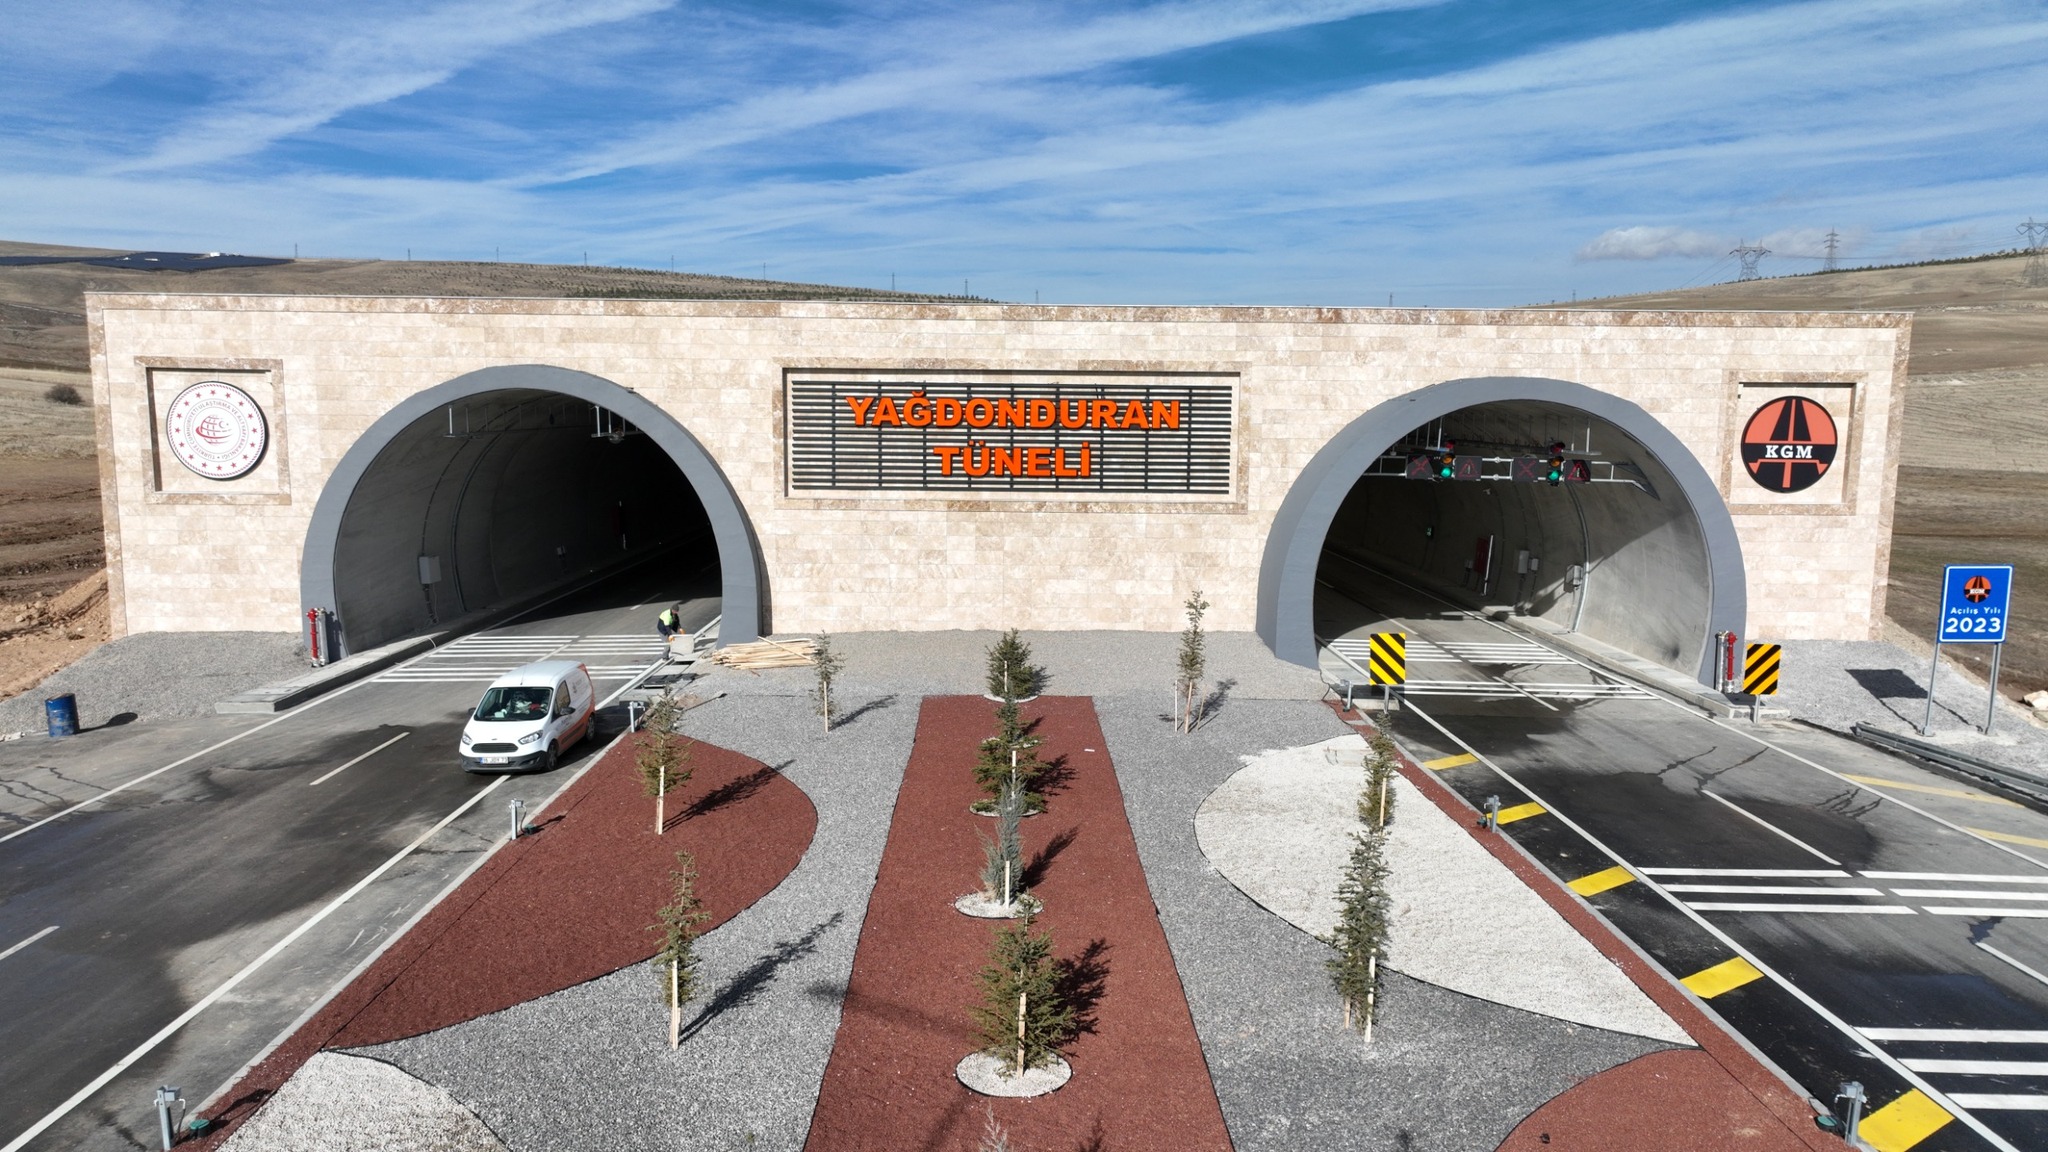 Sivas-Malatya yolu Yağdonduran geçidinde kış ayları yaşanan ulaşım sorununu ortadan kaldıracak olan tünel projesinde son aşamaya geldi